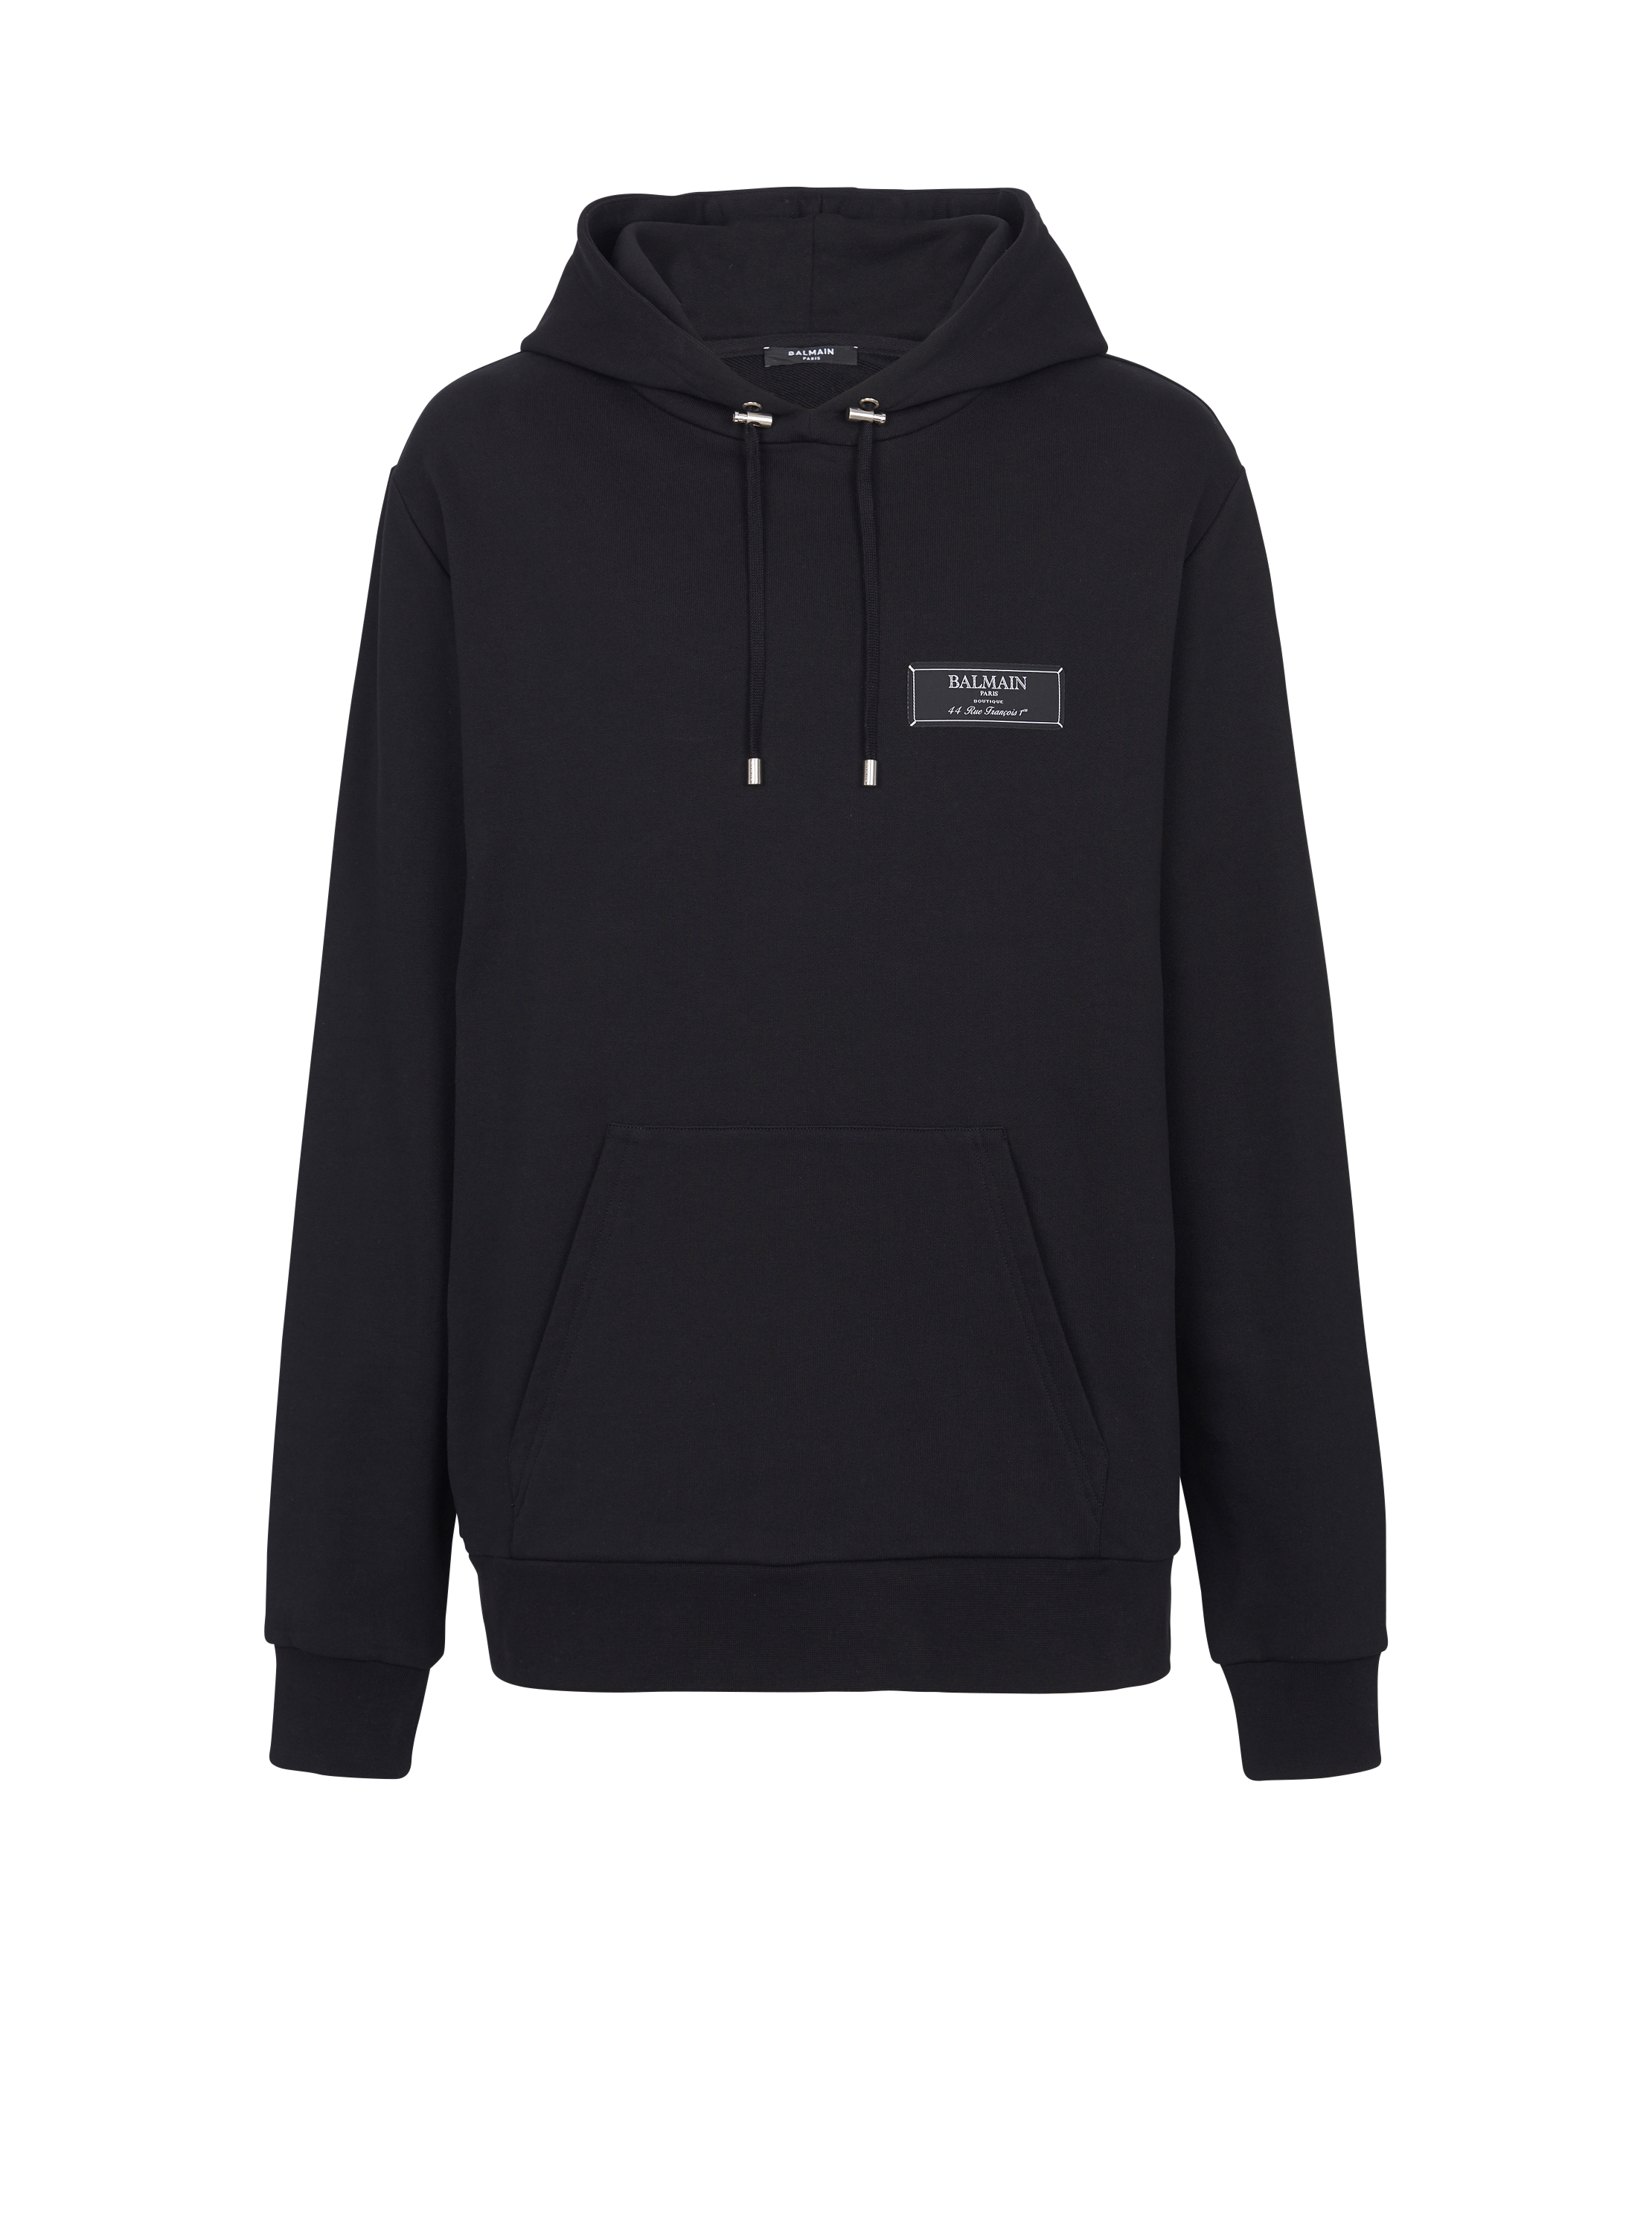 Balmain Paris  label hoodie, black, hi-res